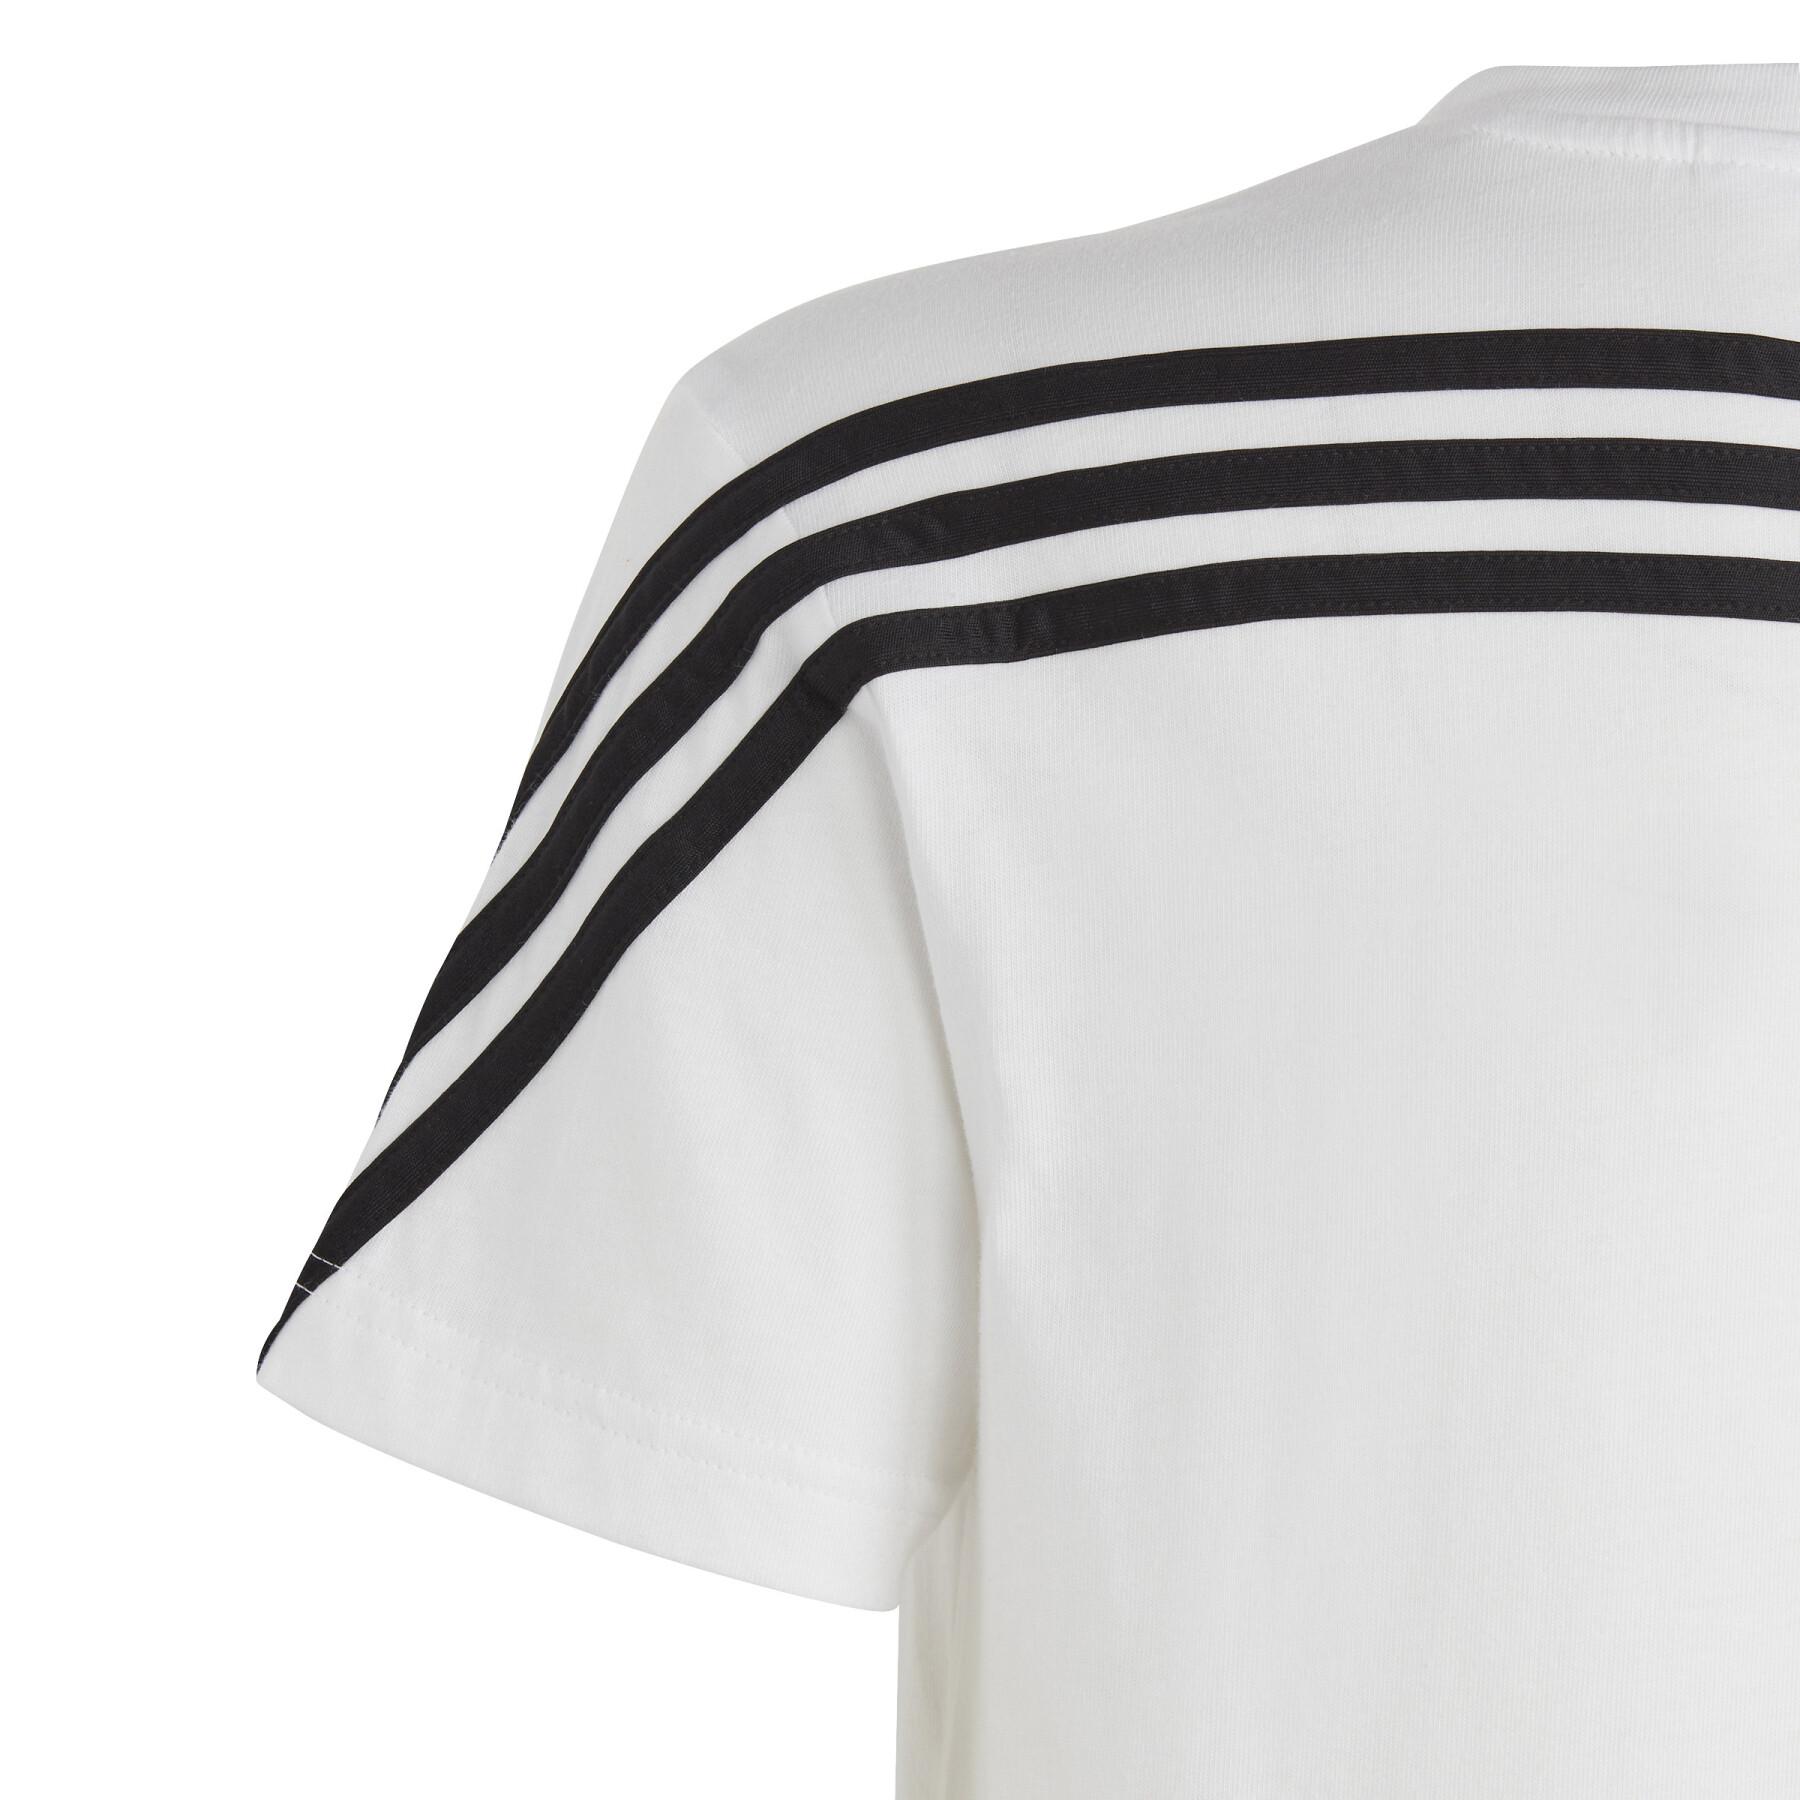 T-shirt enfant adidas 3-Stripes Future Icons